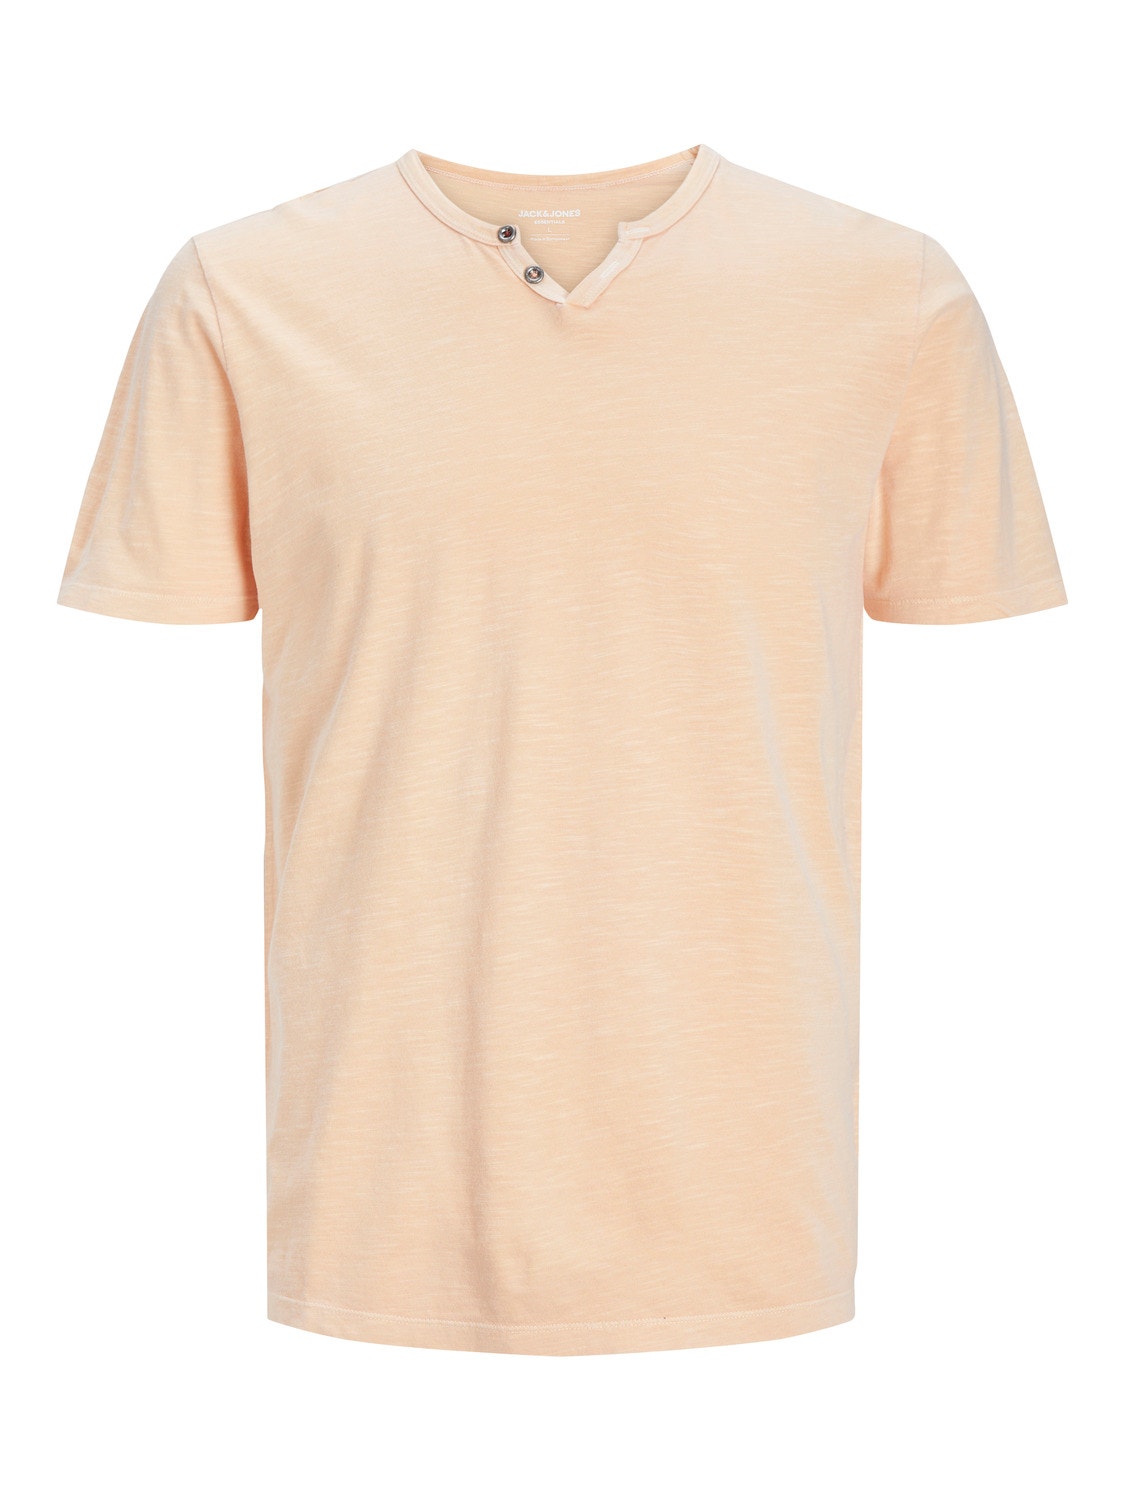 Jack & Jones Plain Split Neck T-shirt -Apricot Ice  - 12164972